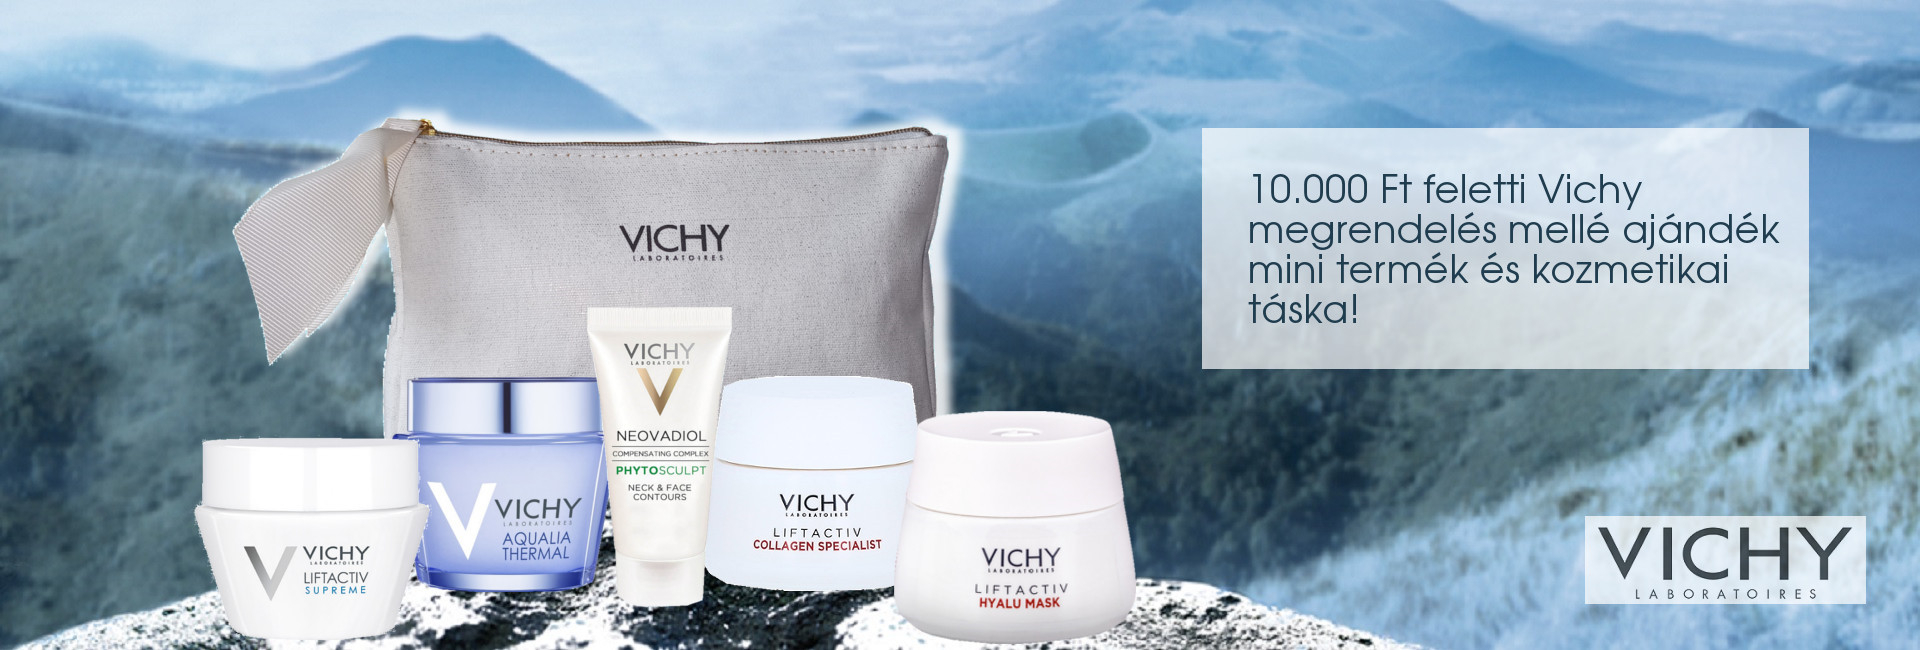 2020. augusztus 5-8. között minden 10.000 Ft feletti Vichy megrendelés mellé Vichy mini arcápolót és kozmetikai táskát adunk ajándékba!